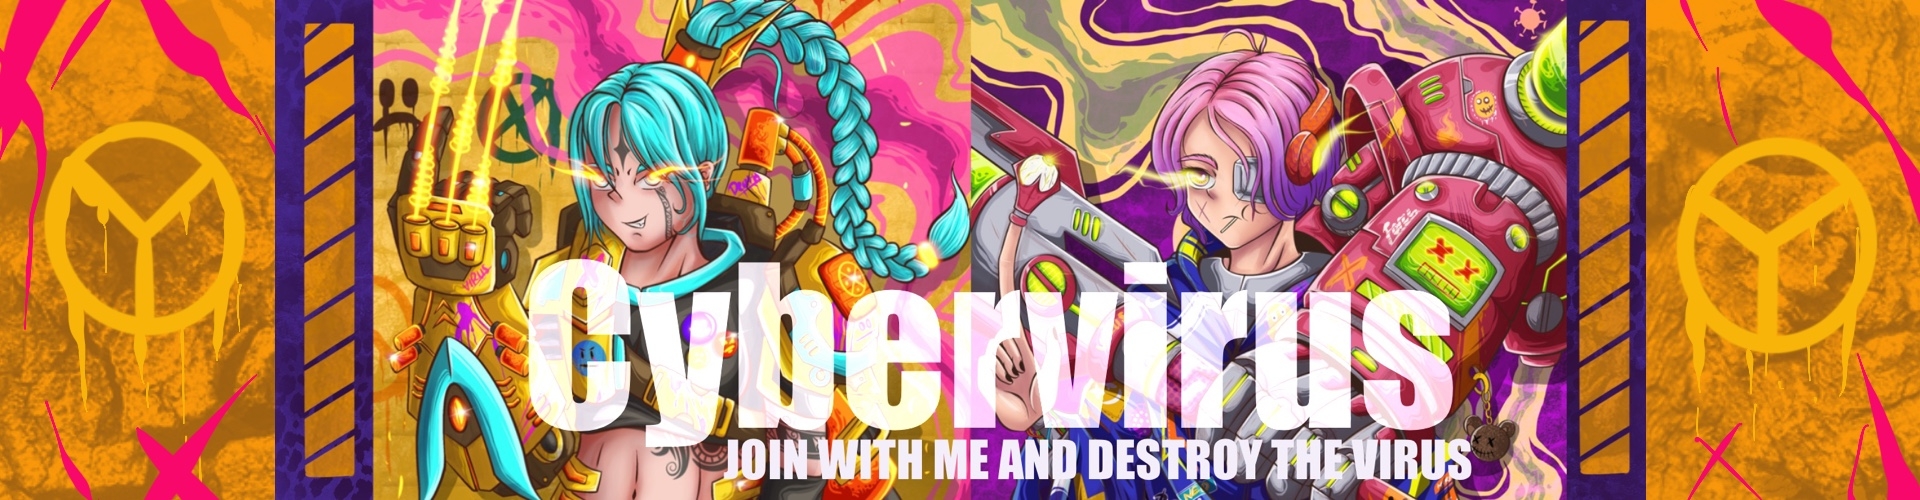 Cybervirus banner